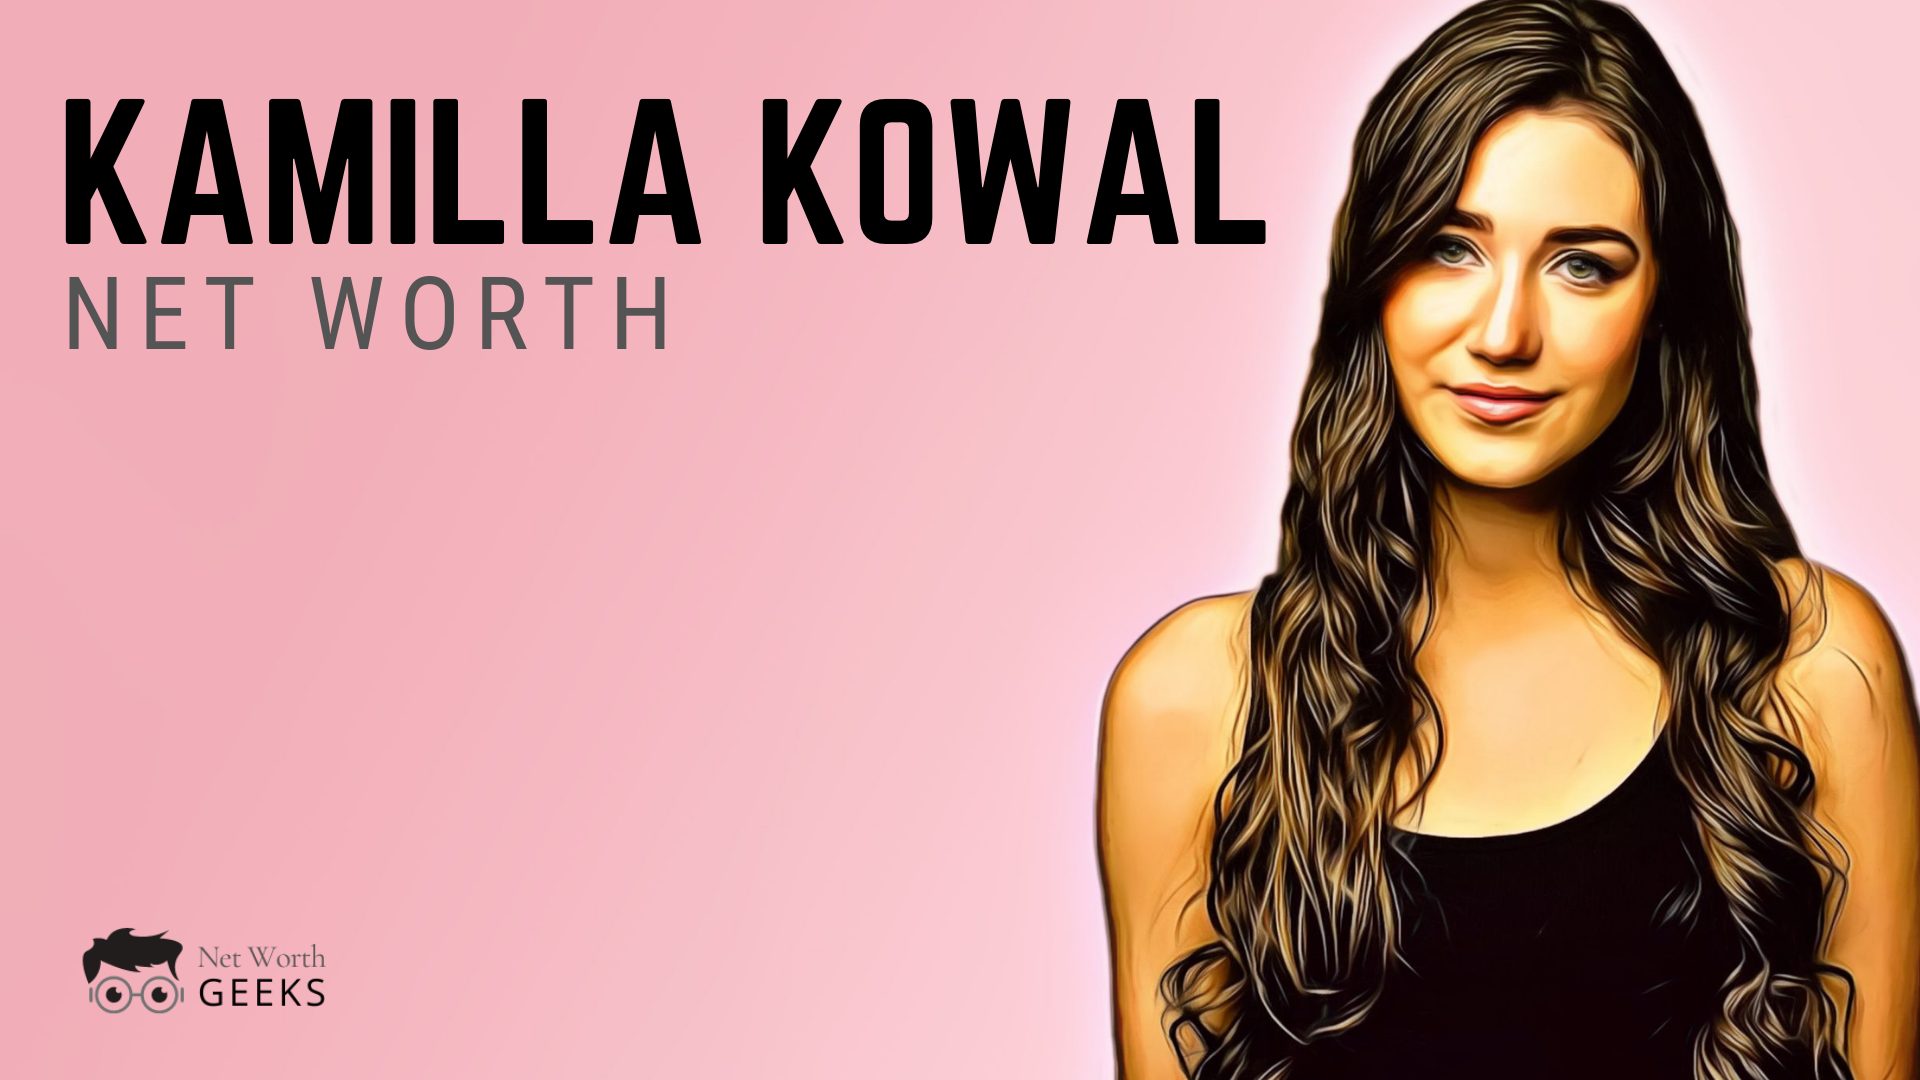 Kamilla Kowal Bio & Net Worth